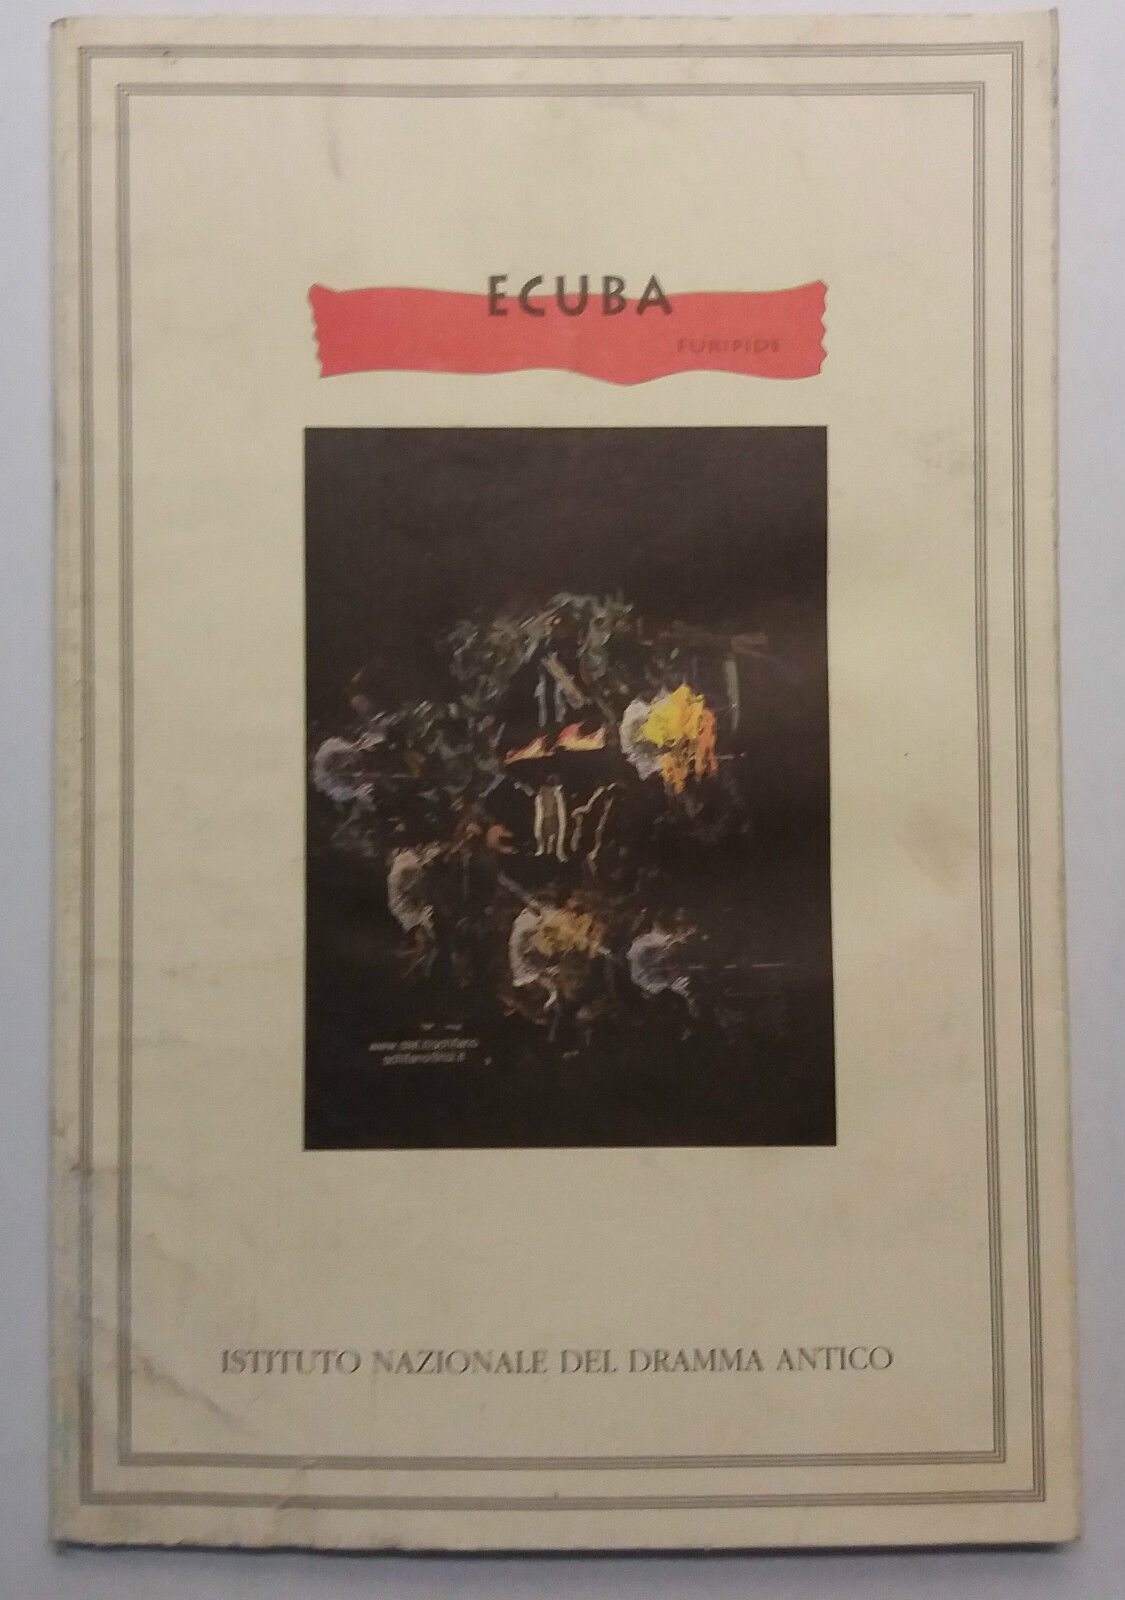 Ecuba - Euripide - Istituto Nazionale del Dramma Antico - 1998 - G